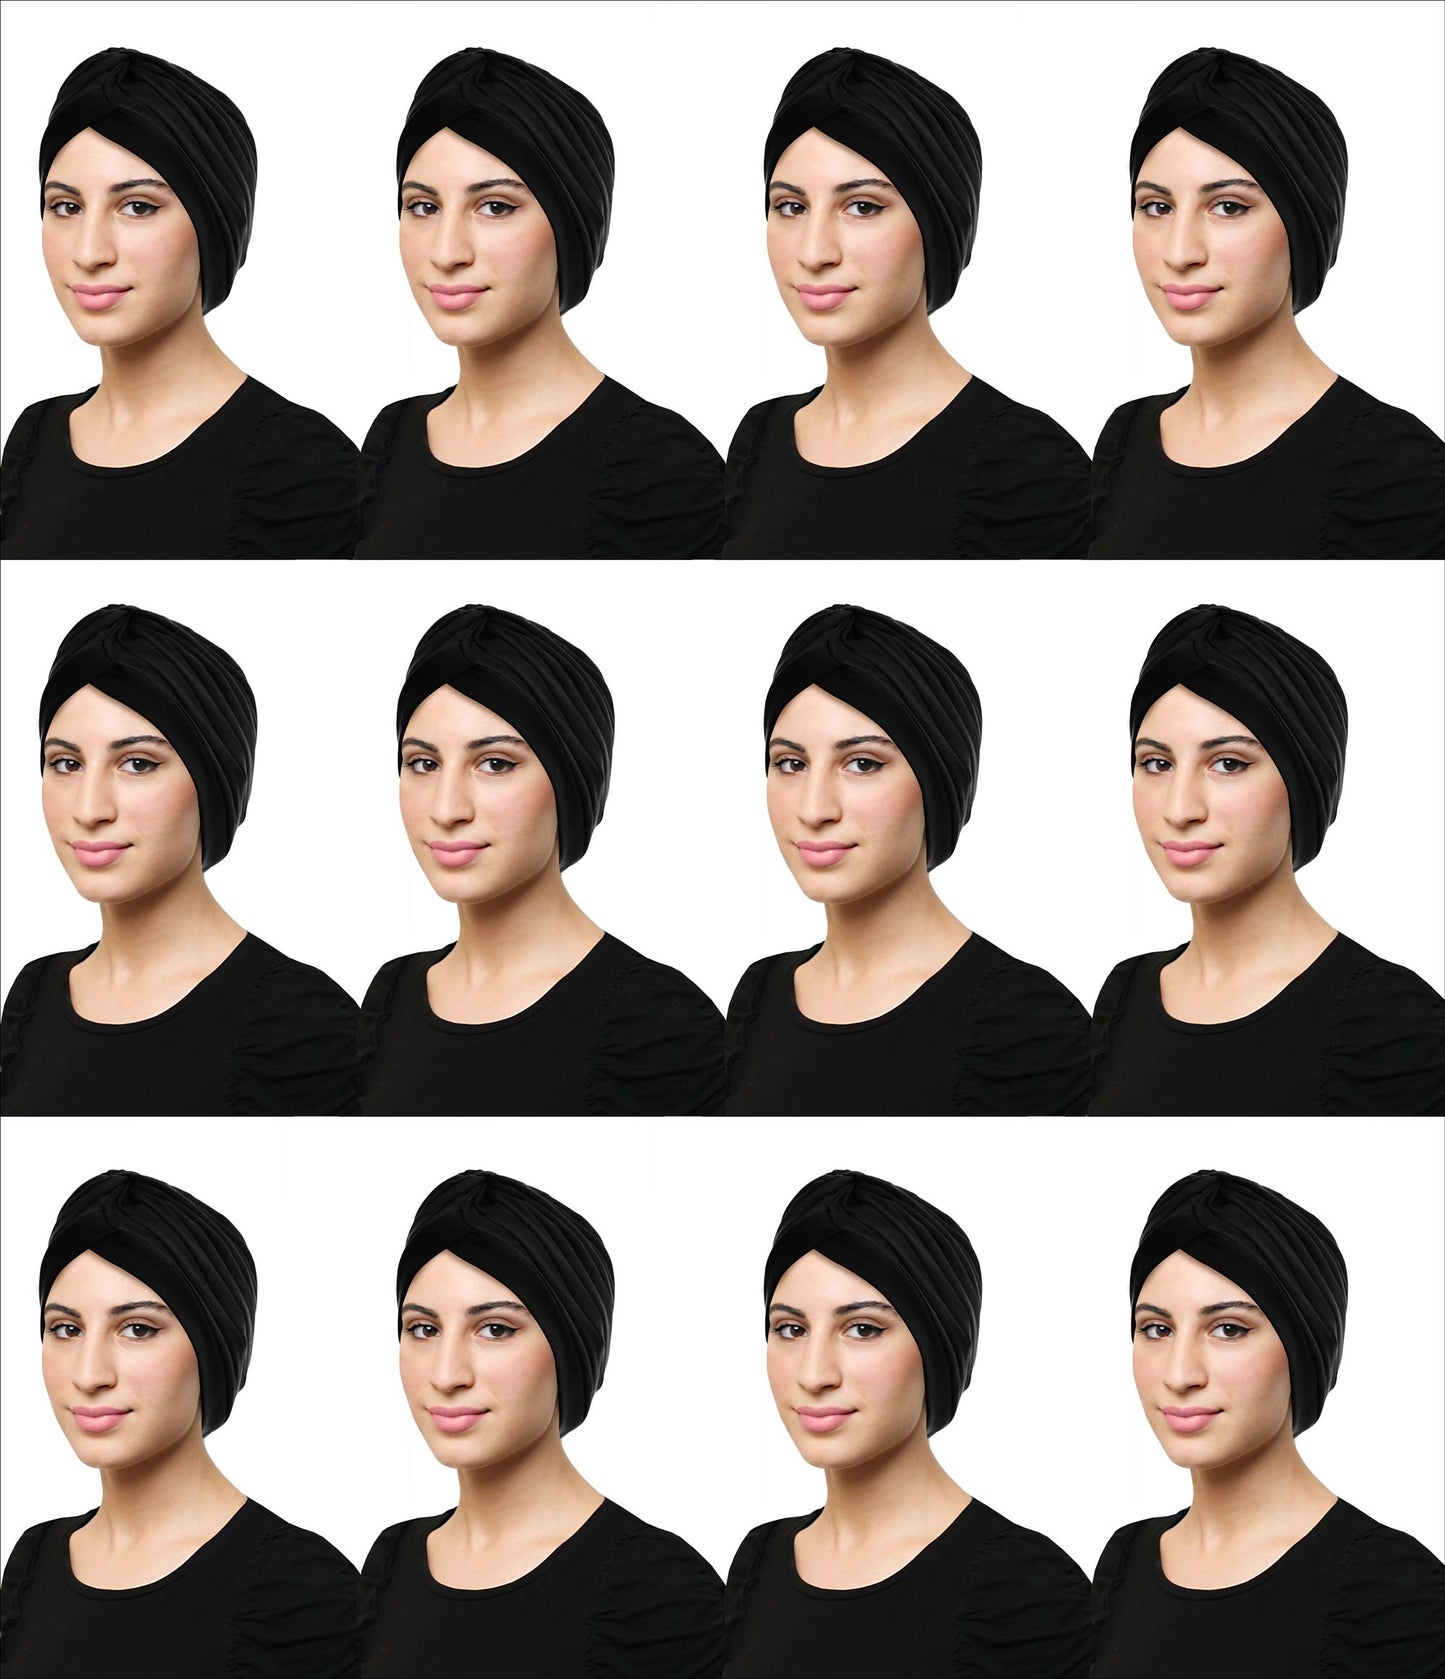 Wholesale Khatib Cotton Classic Turban ALL BLACK Muslim Women Hijab Accessories